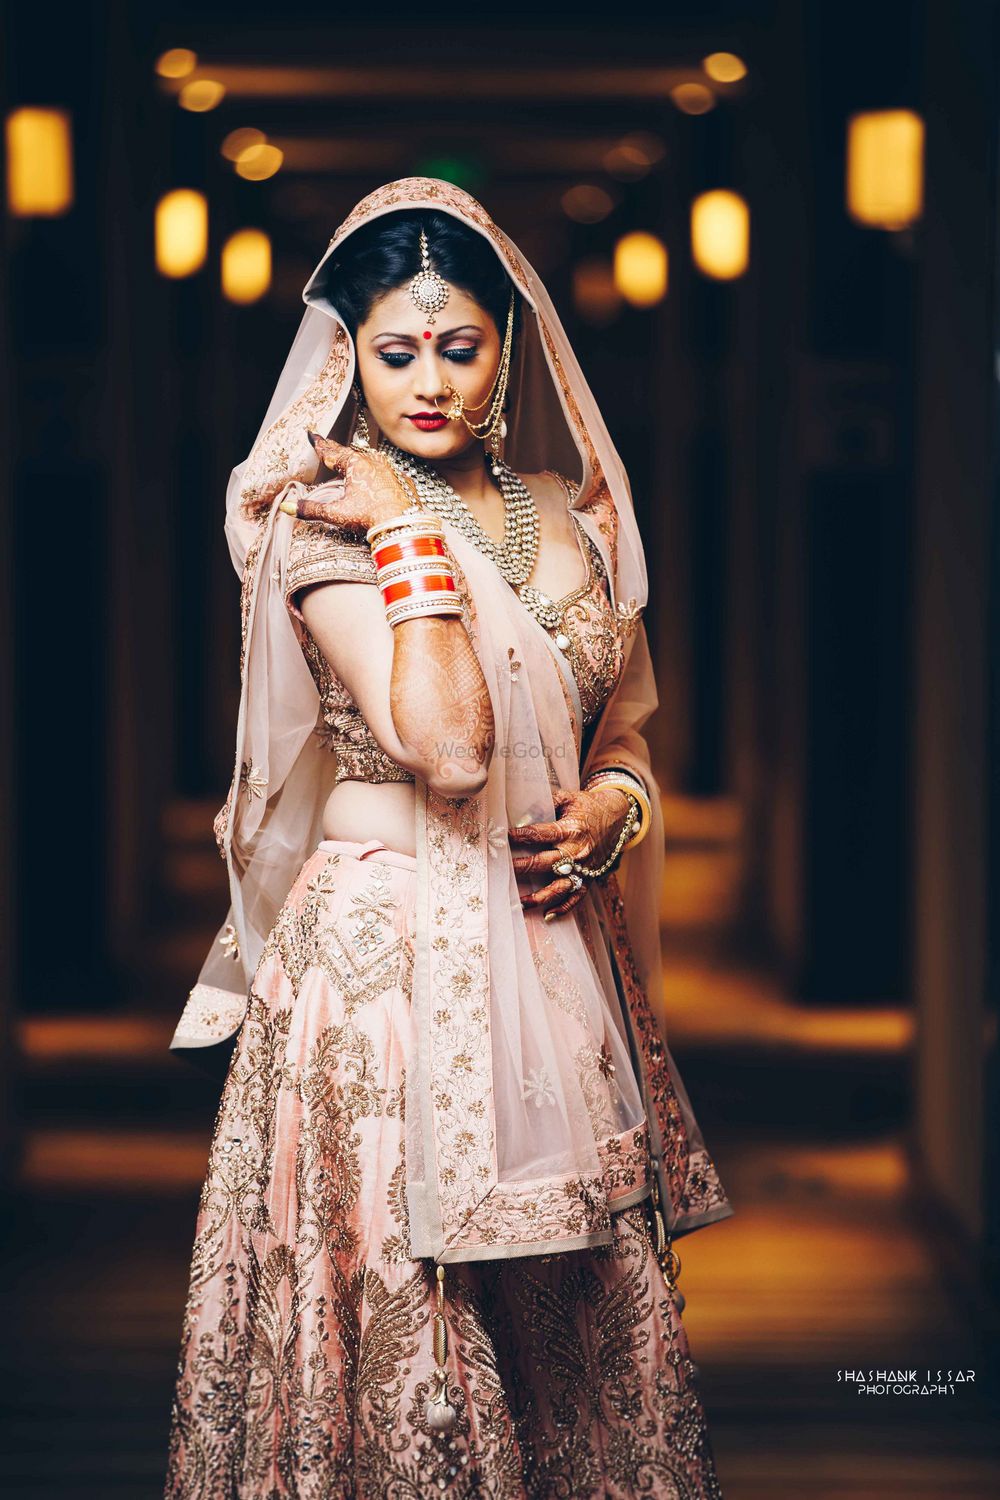 Photo of Pink and gold embellished bridal lehenga